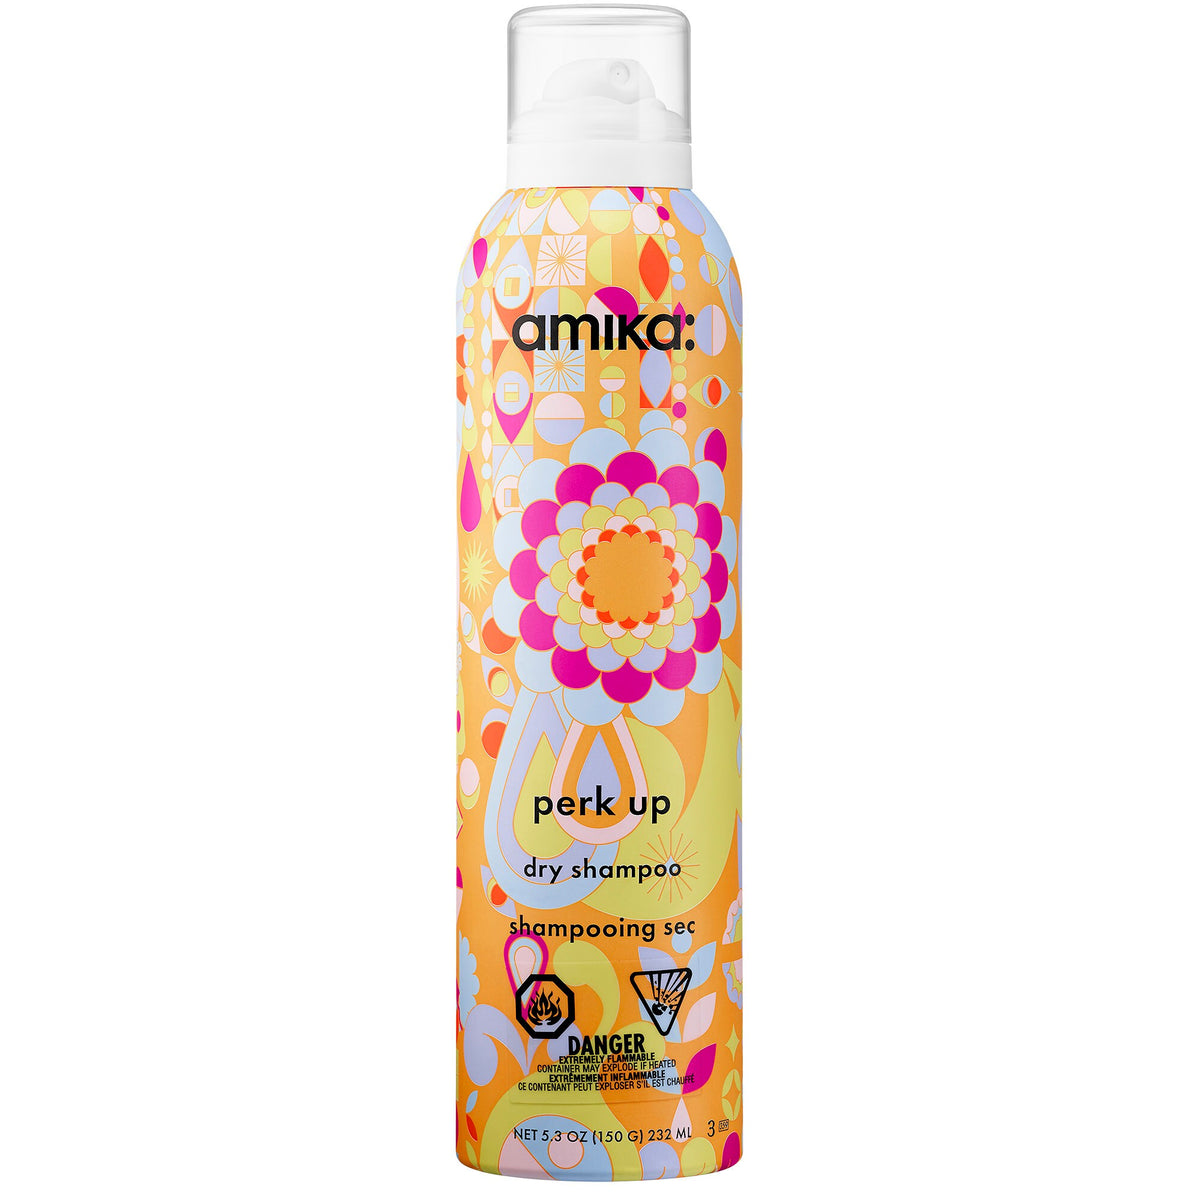 Amika Perk Up Dry Shampoo|